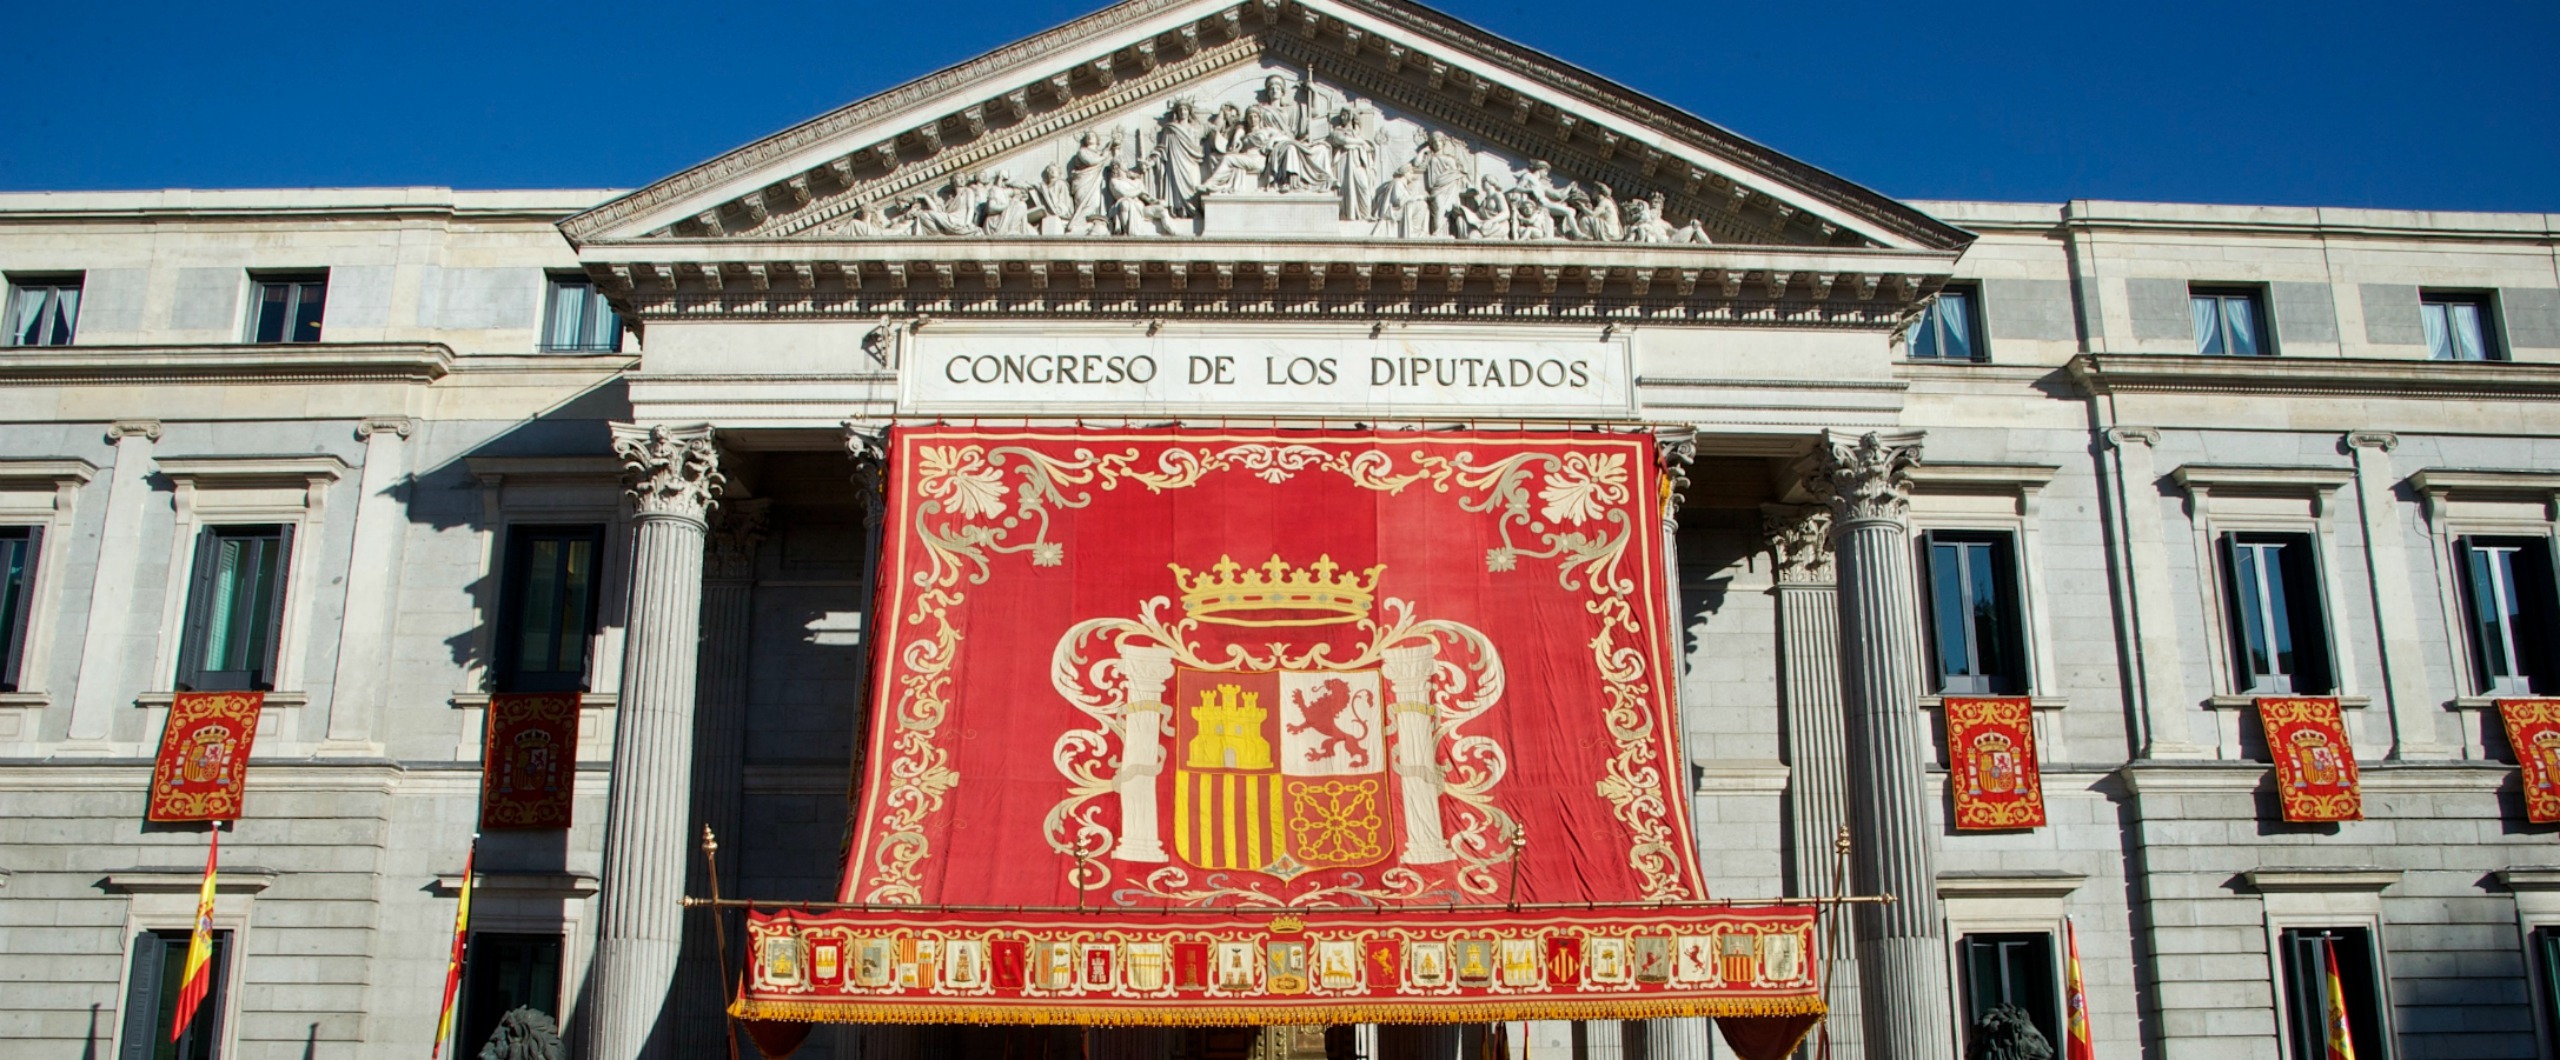  برلمان اسبانيا يعلن عن رفض موازنة الحكومة الاشتراكية